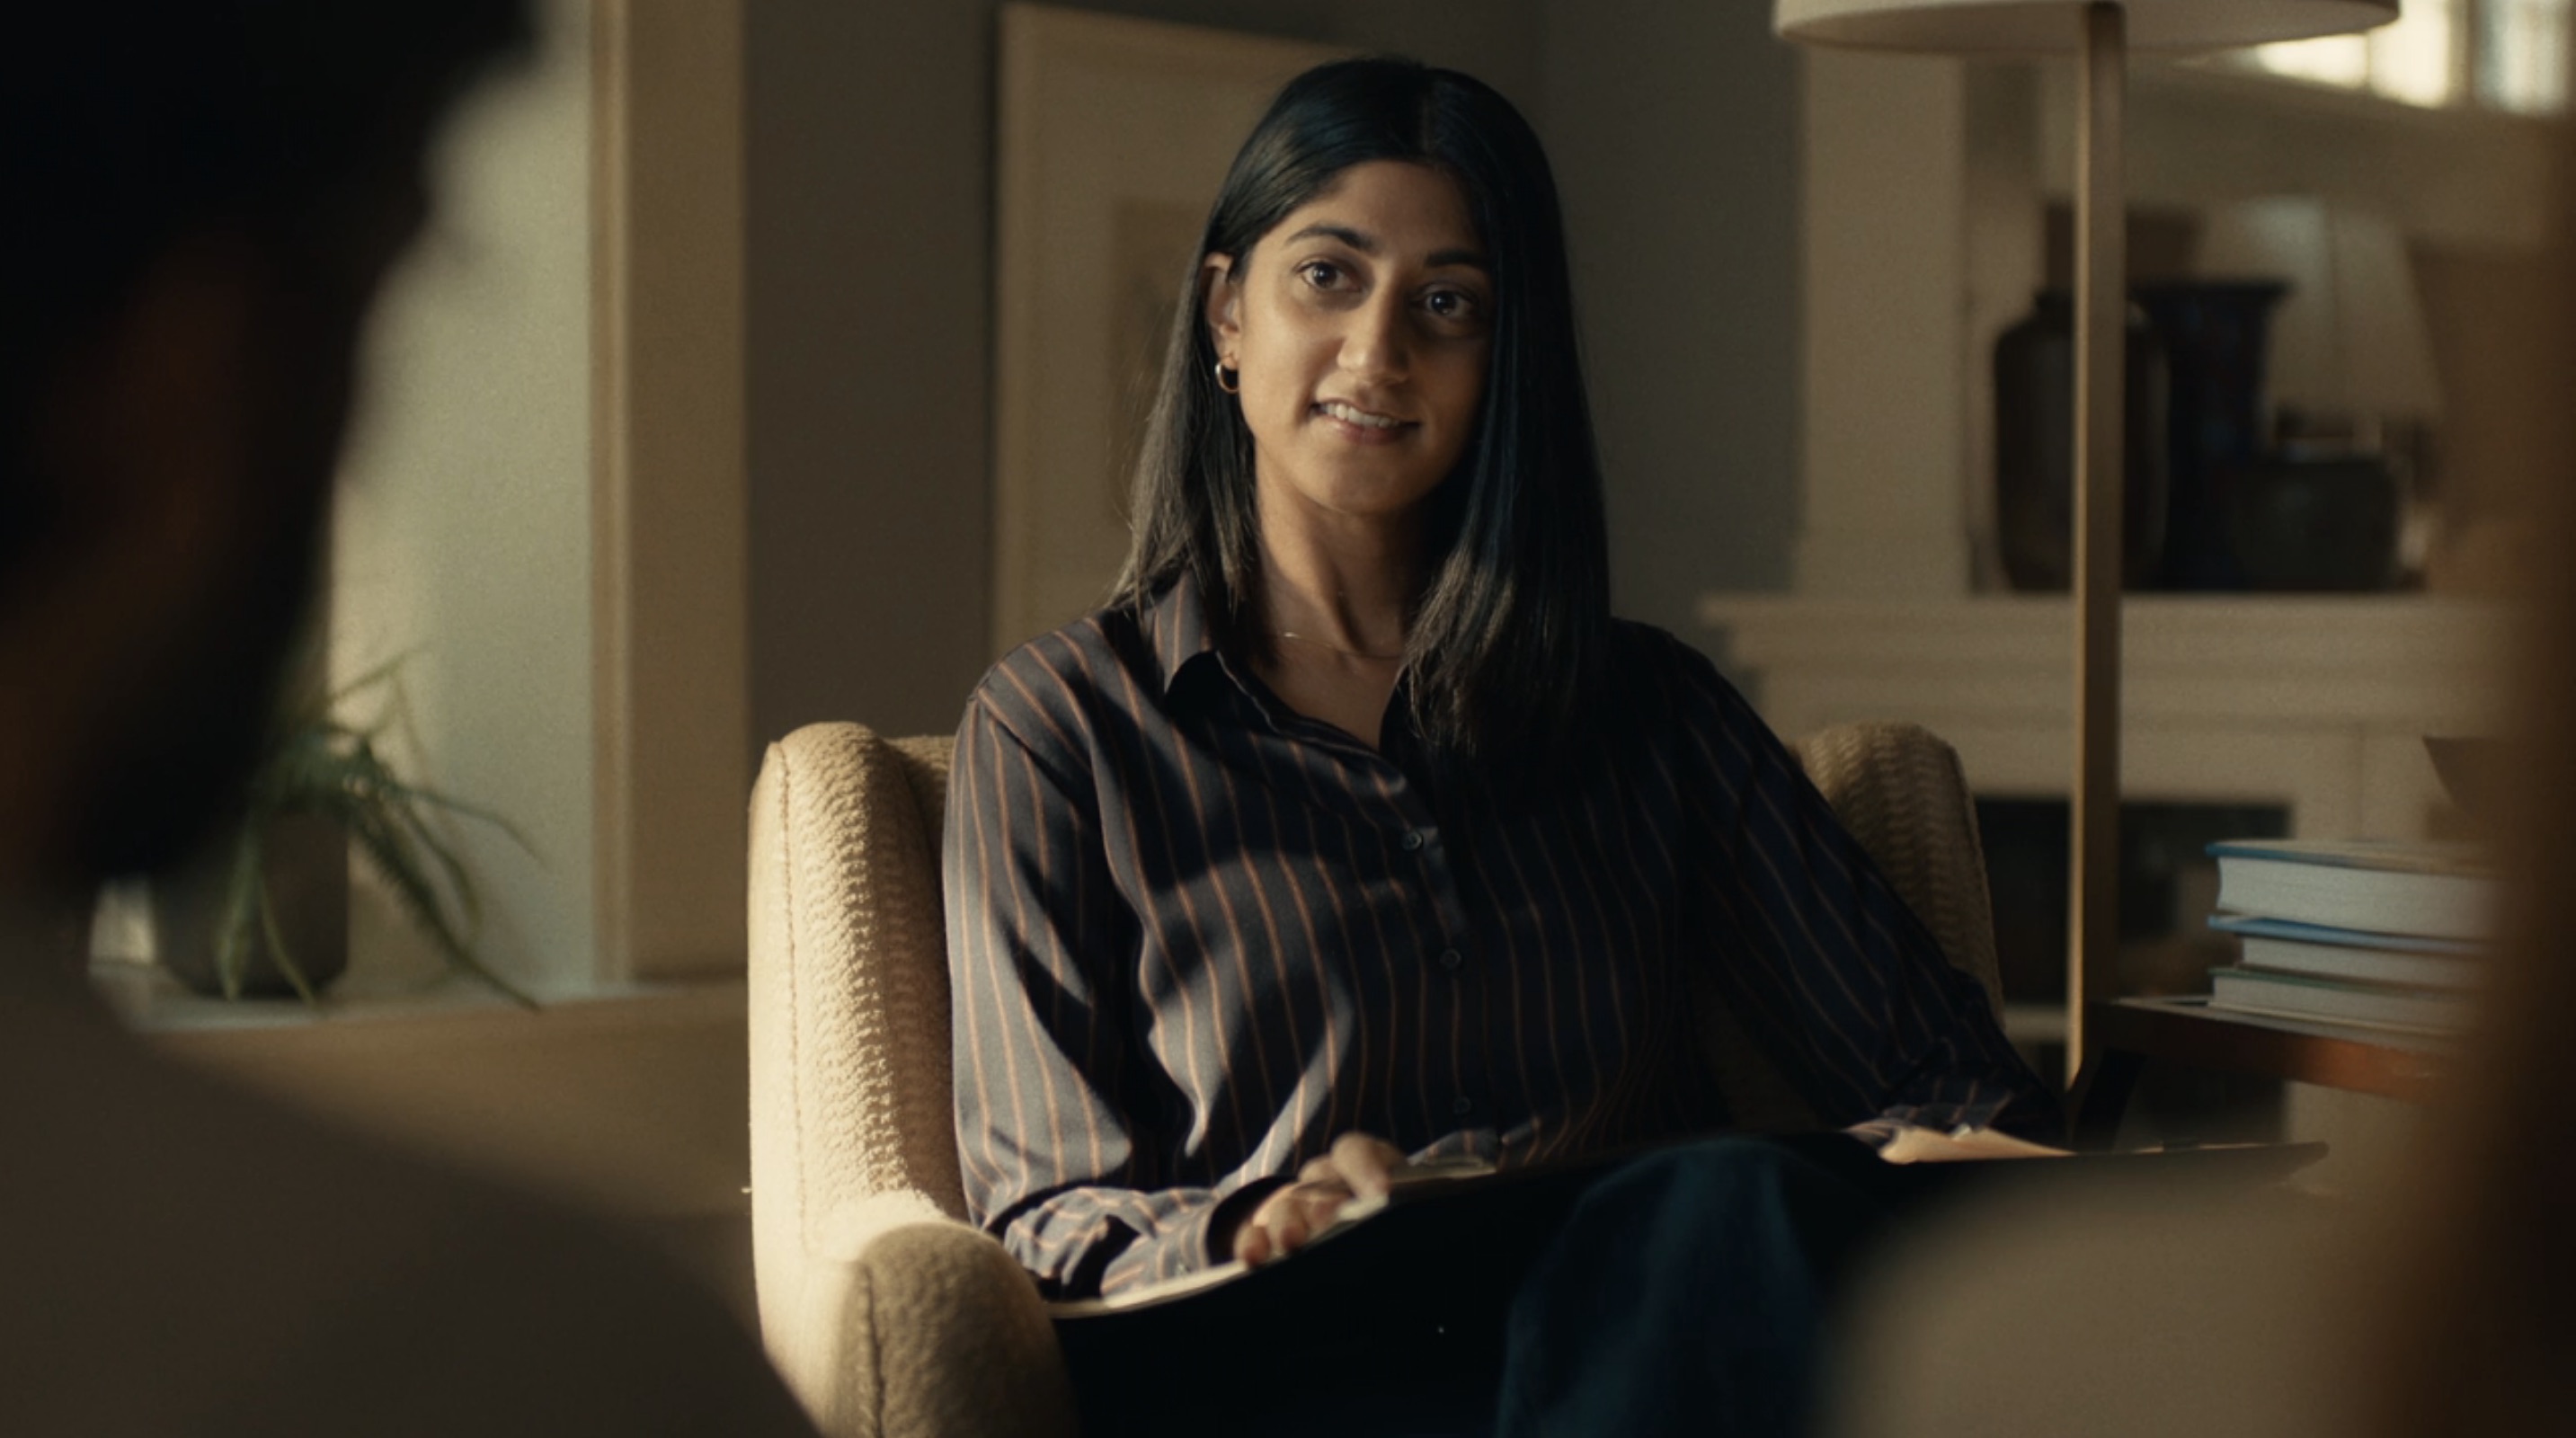 Scenes from a Marriage Cast on HBO - Sunita Mani as Daniella